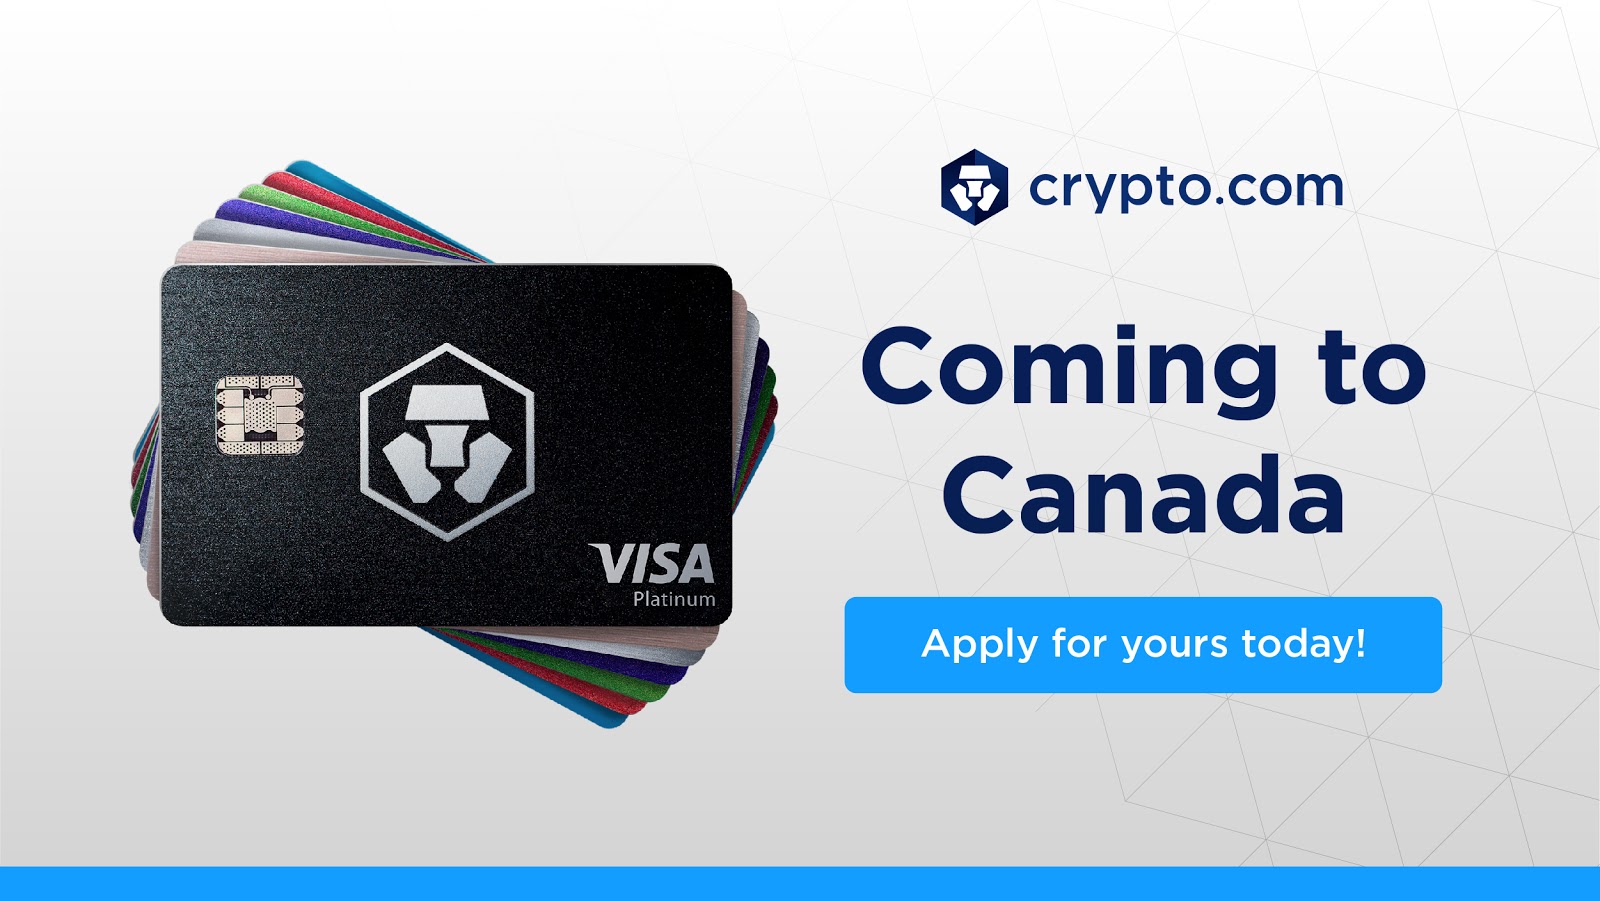 crypto.com visa card delivery time